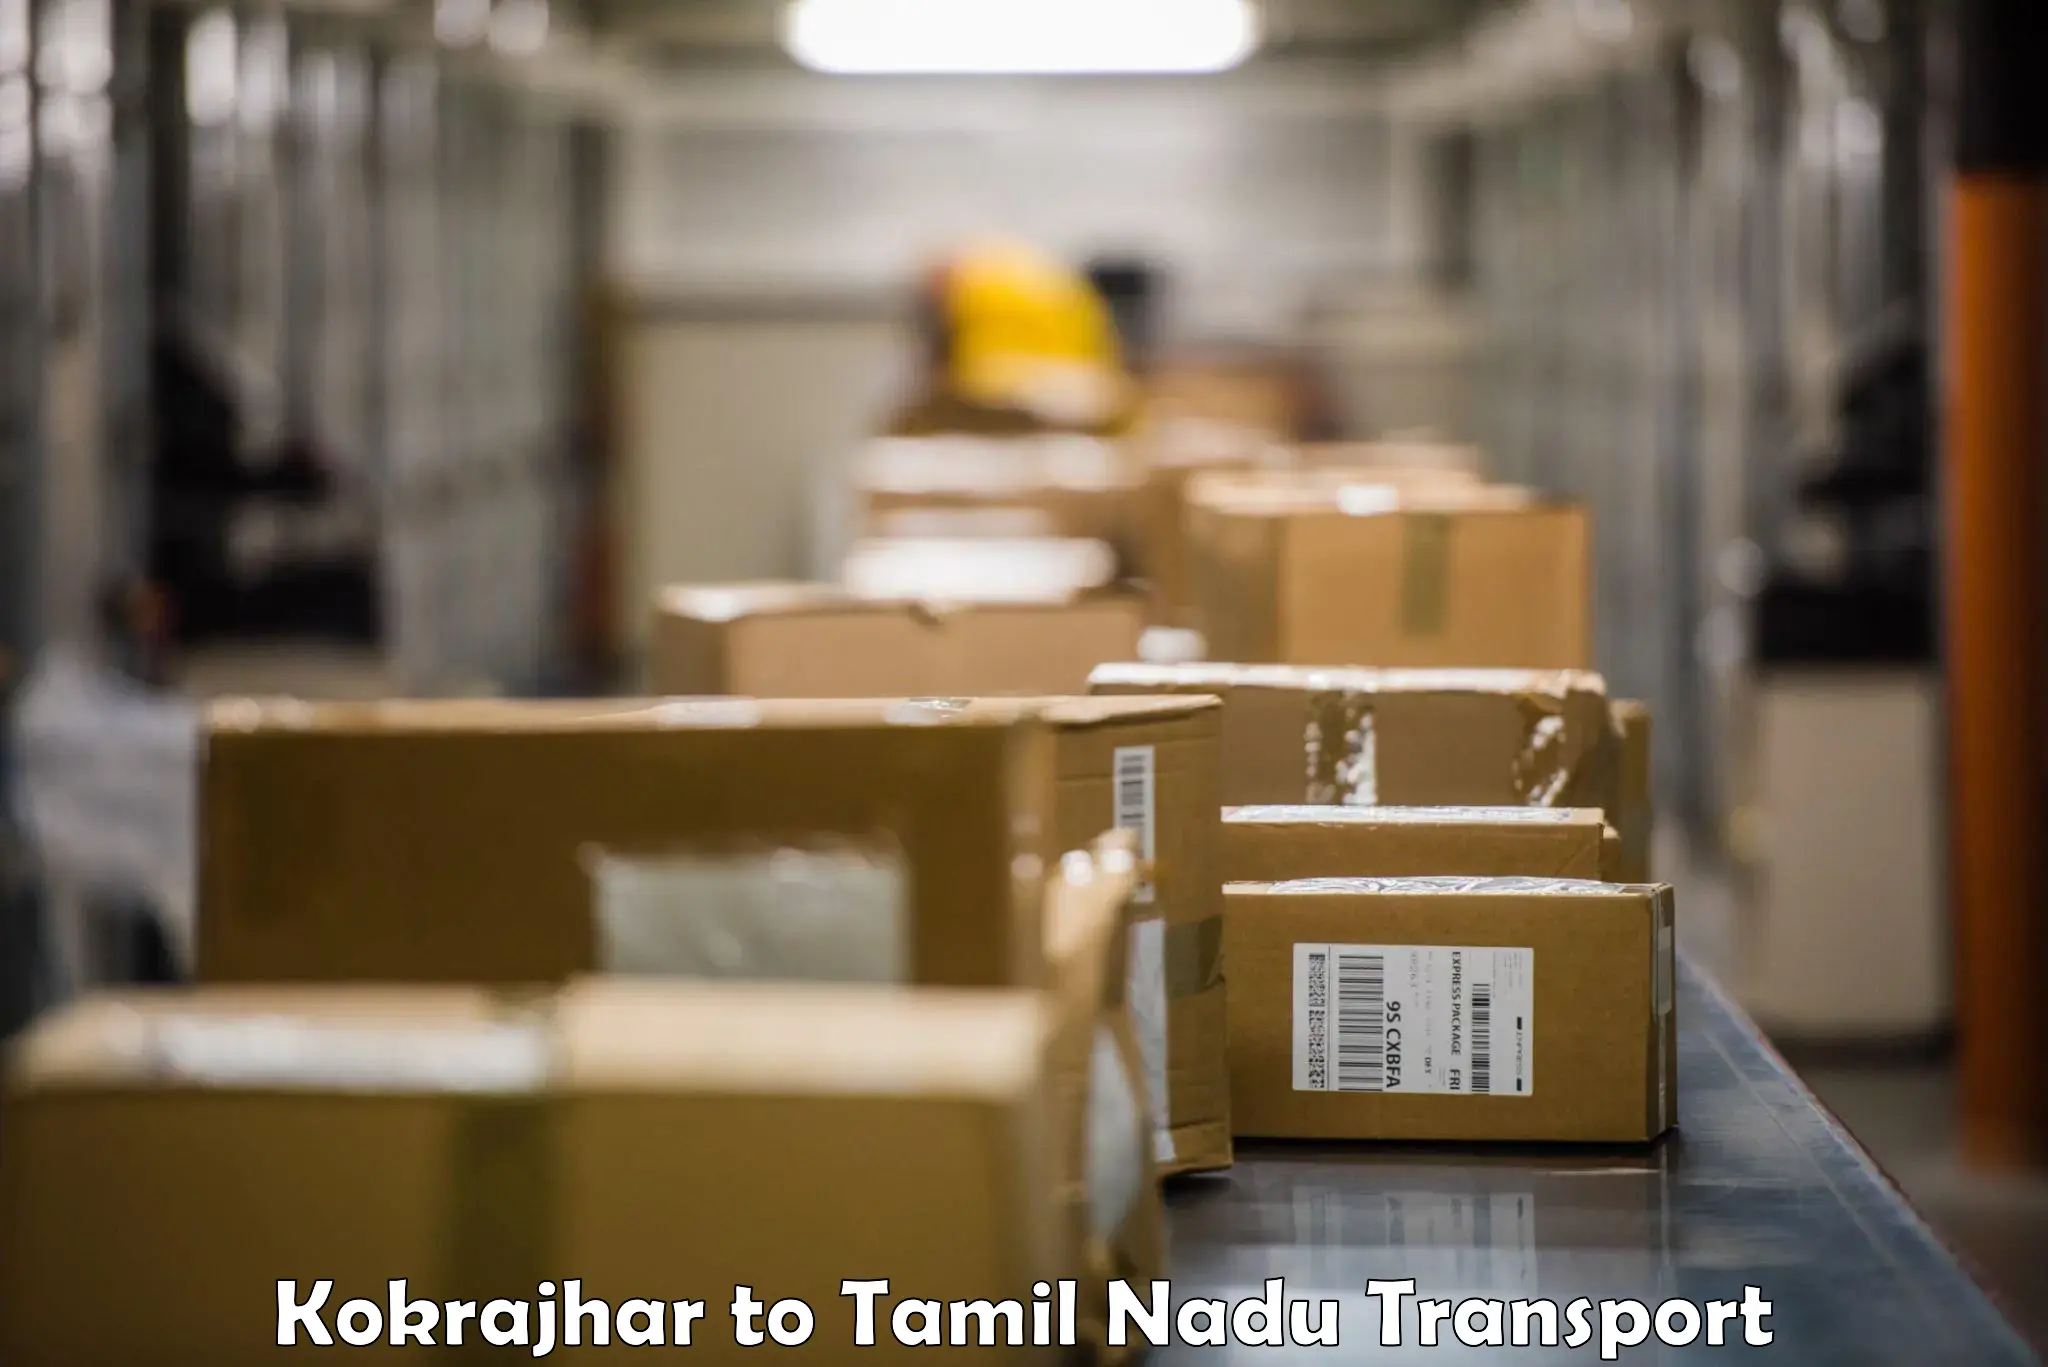 Commercial transport service Kokrajhar to Dindigul